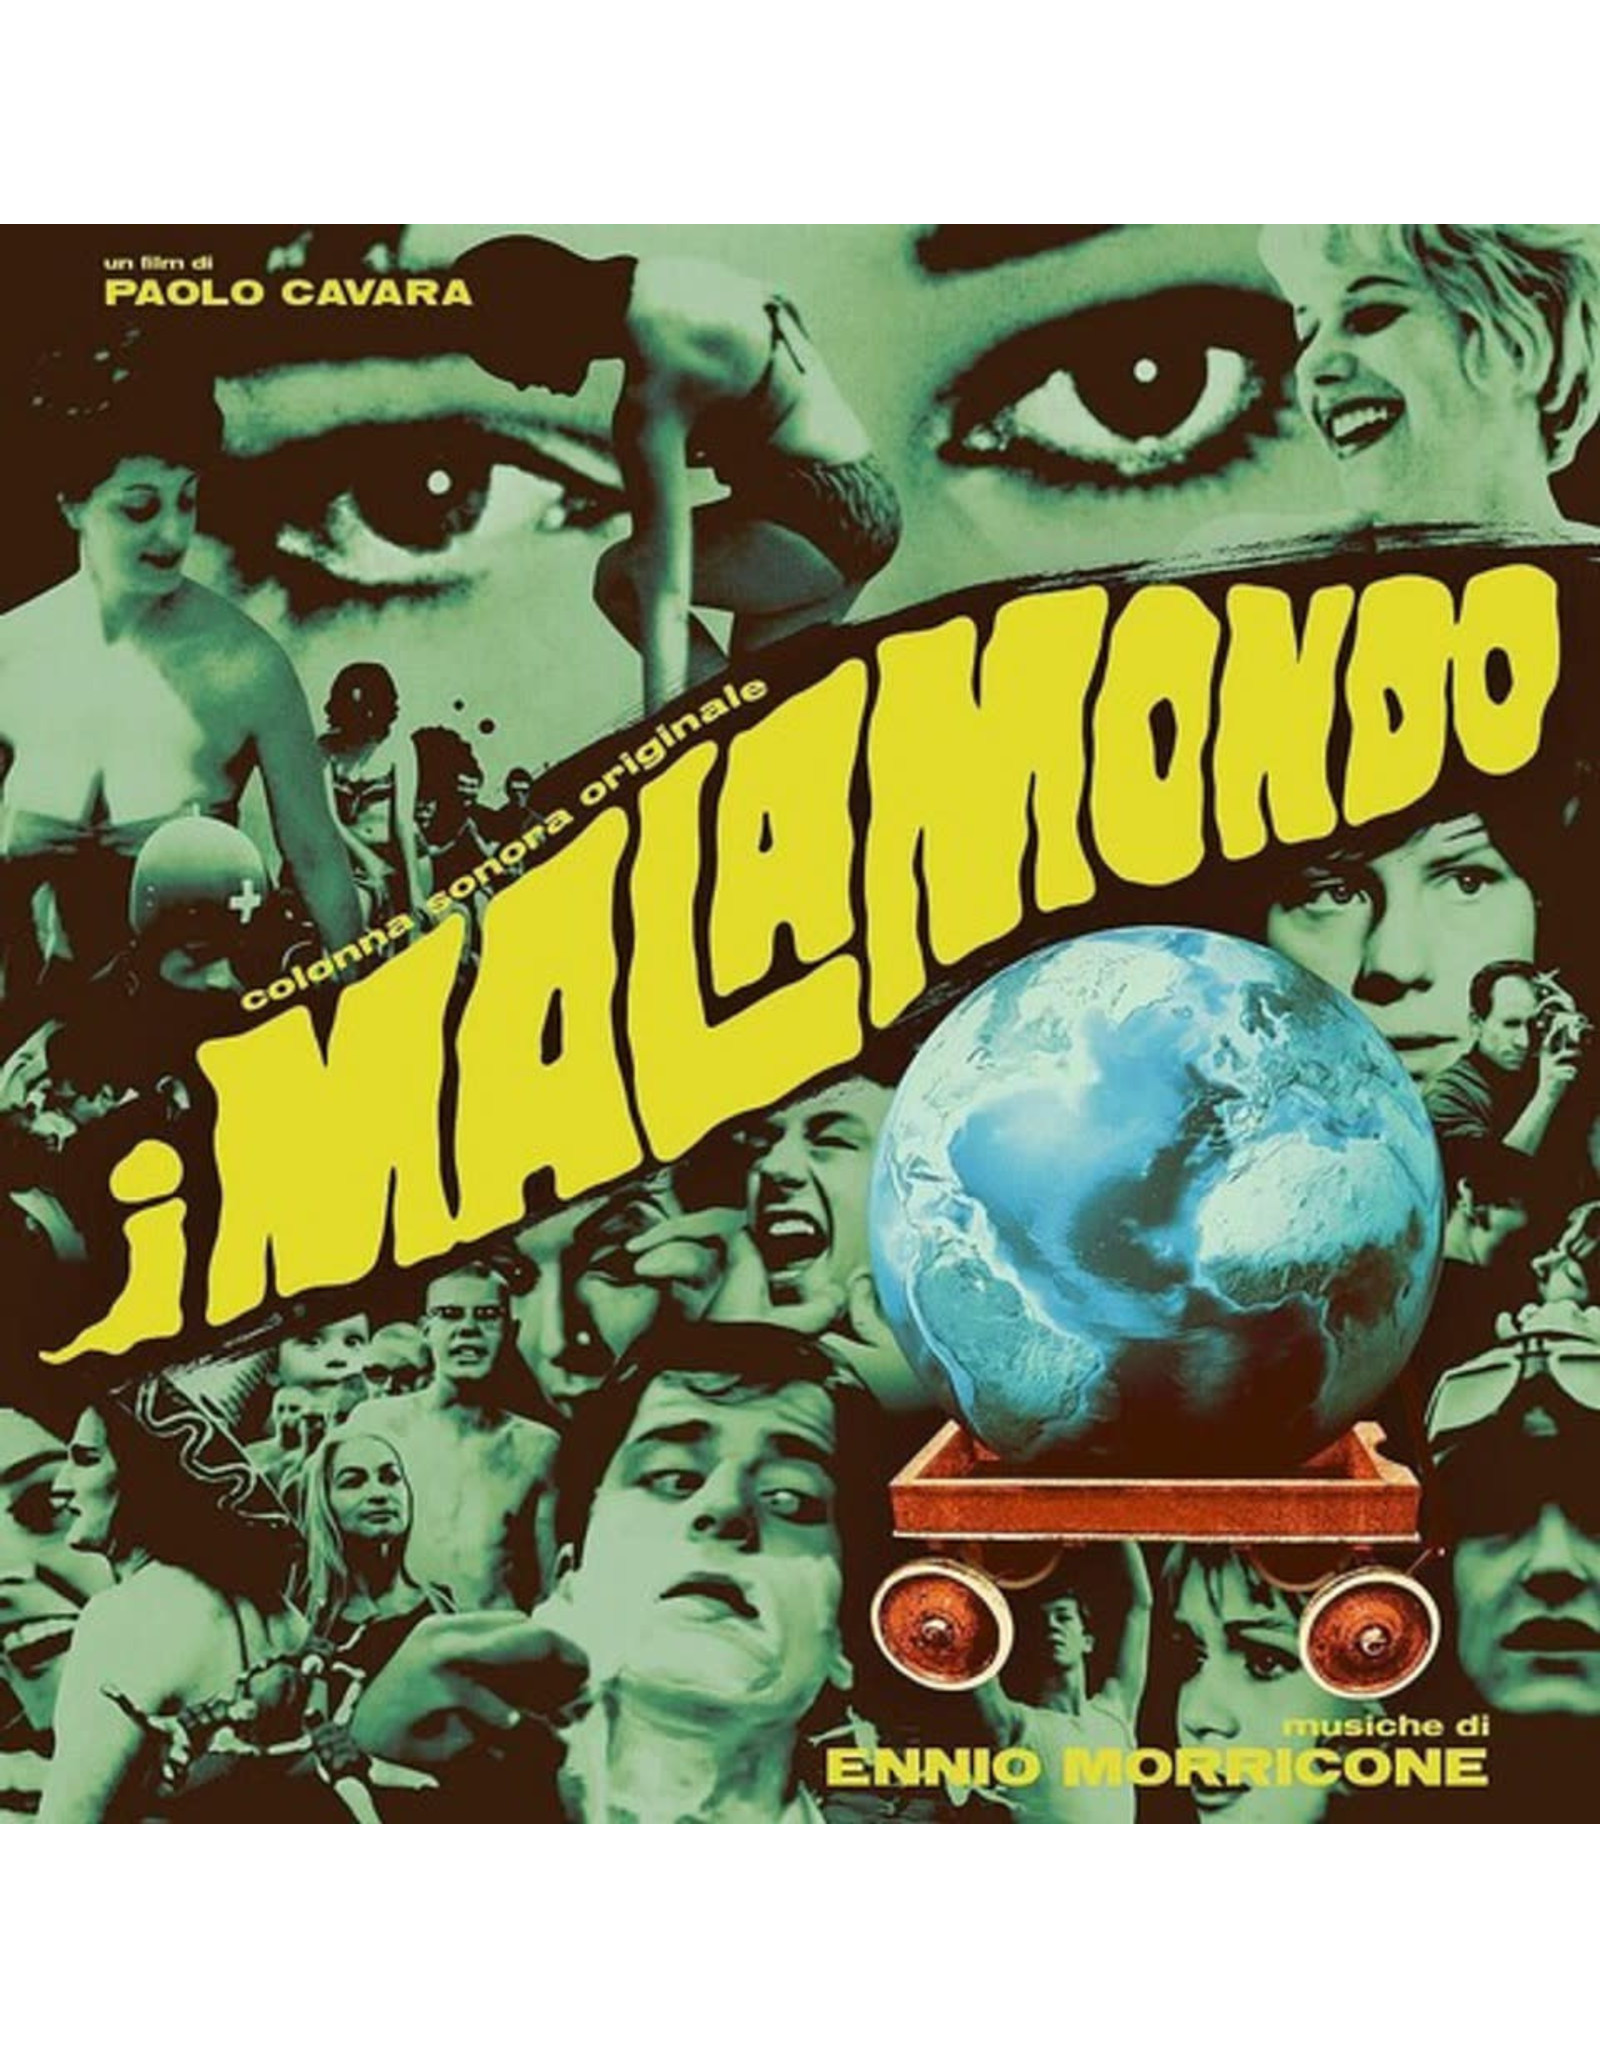 Decca Morricone, Ennio: I Malamondo LP